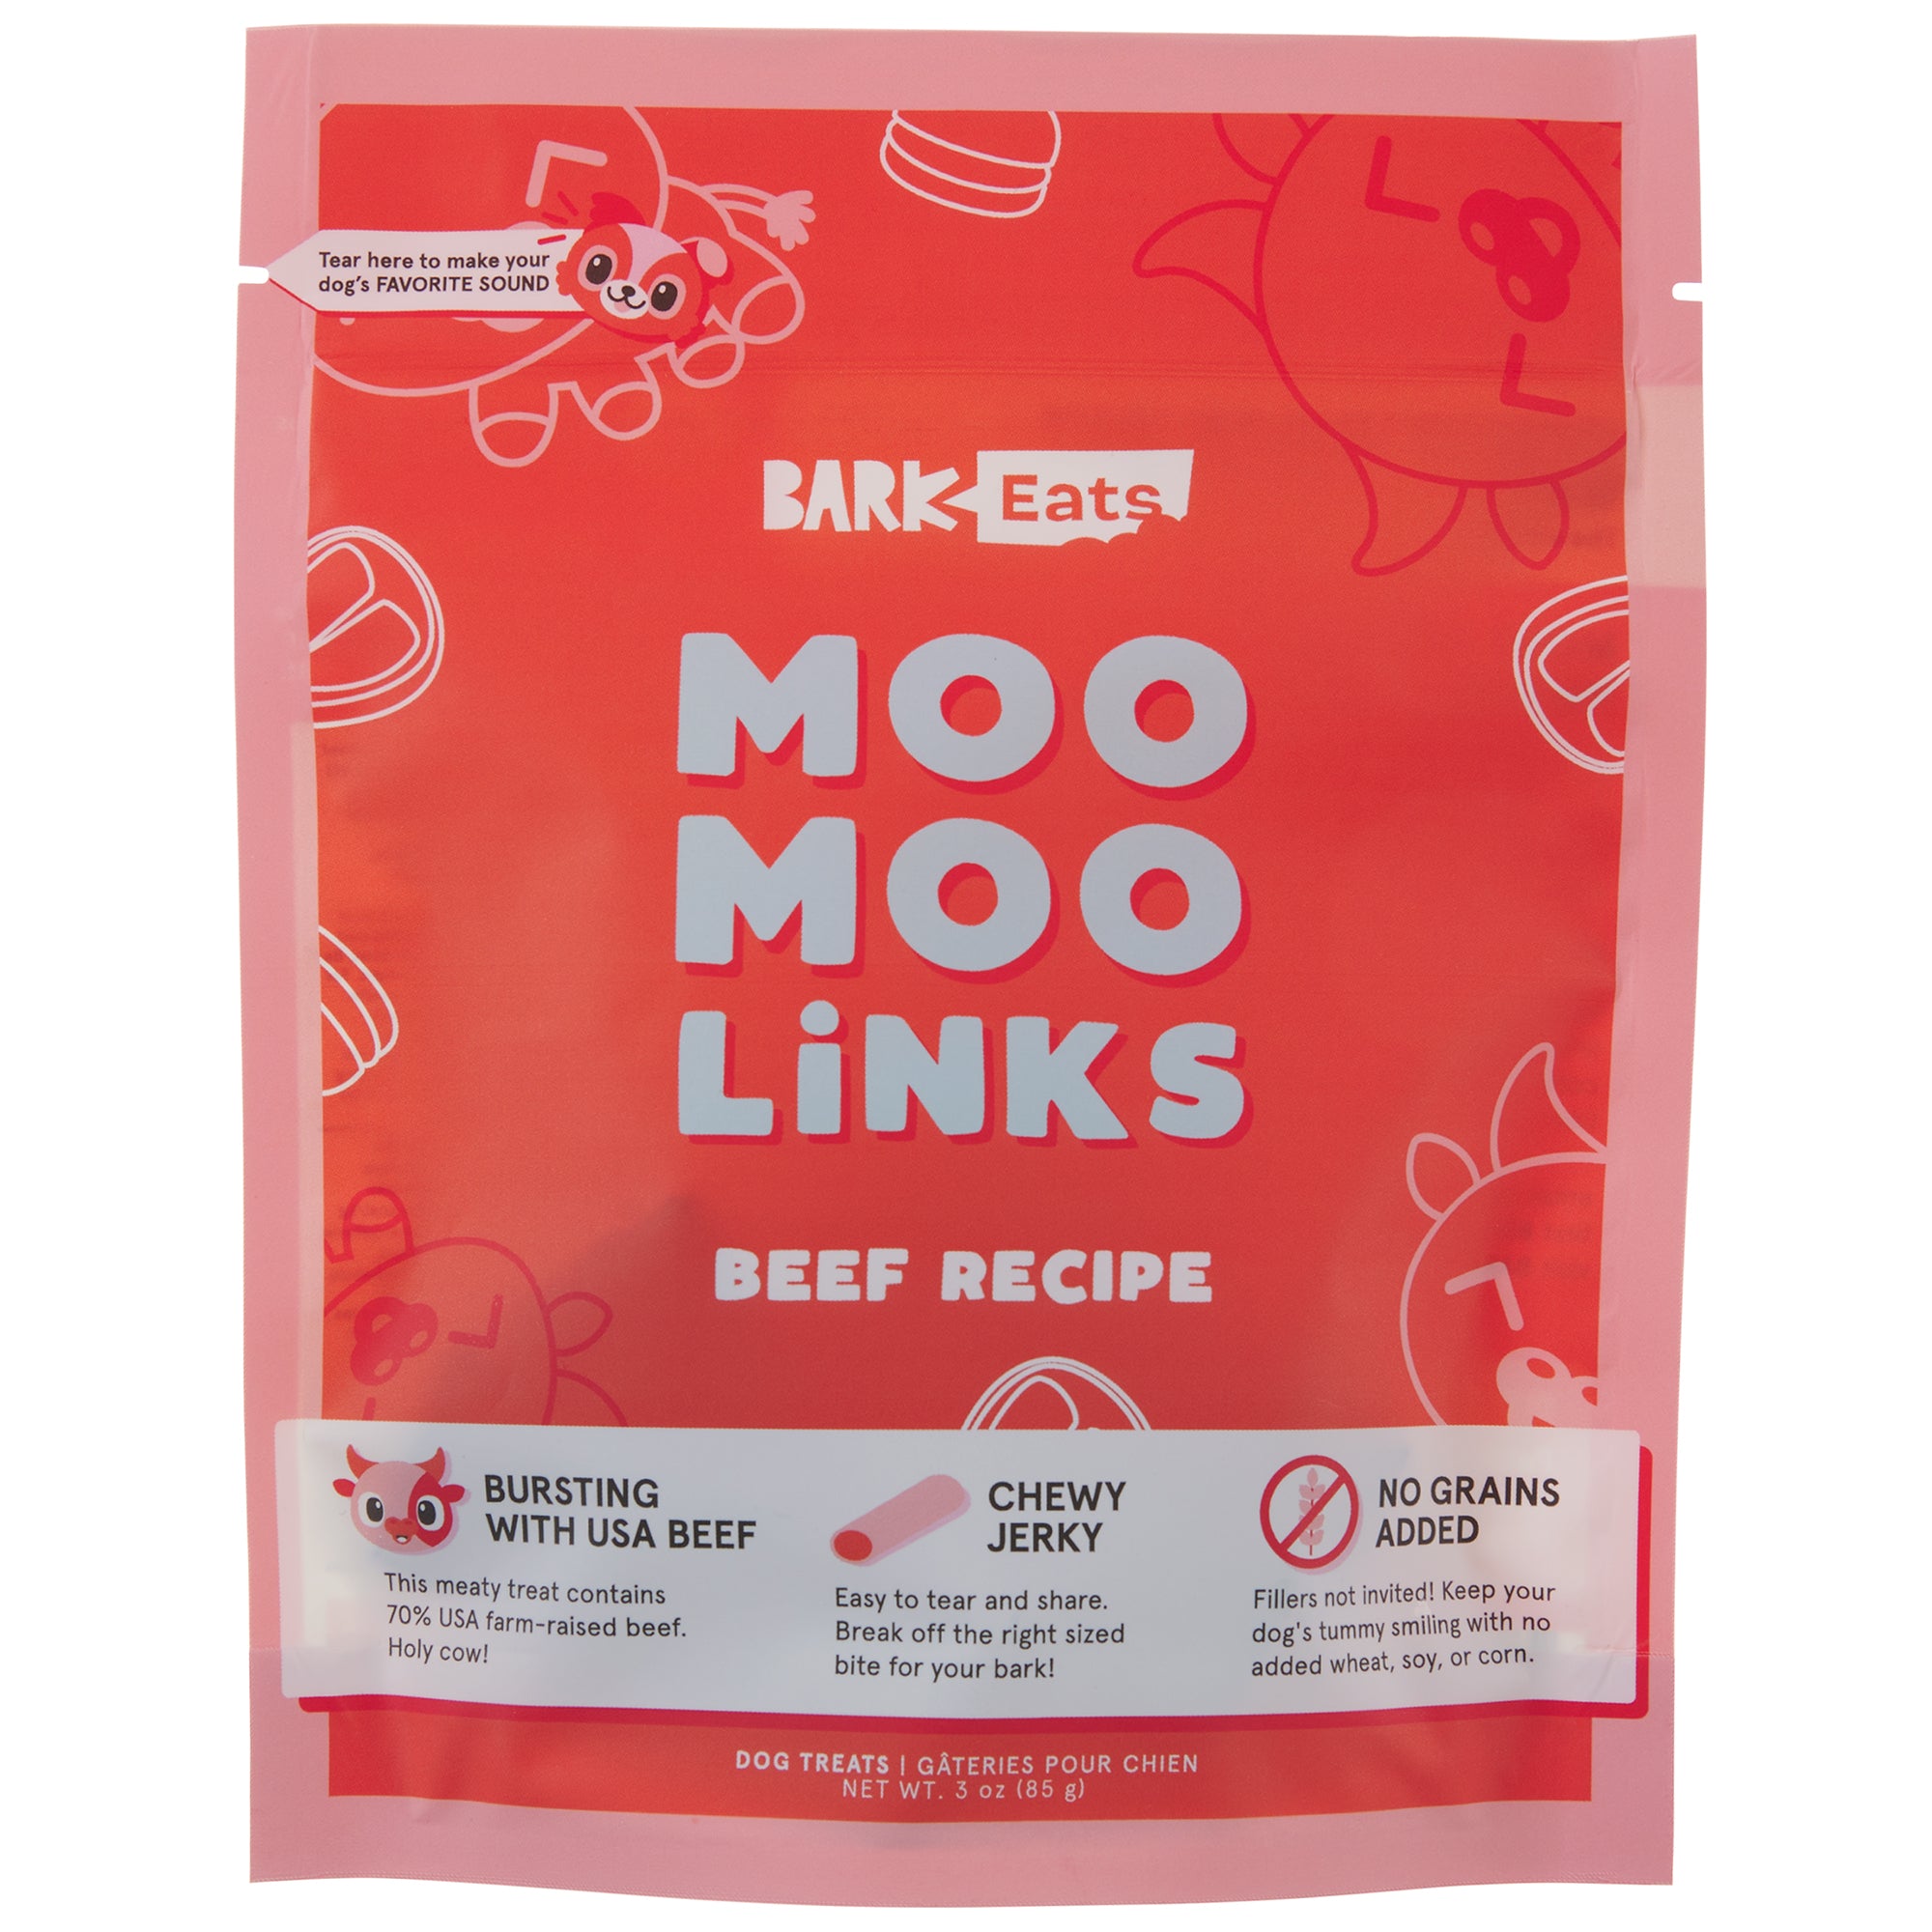 Moo Moo Links: Beef Recipe